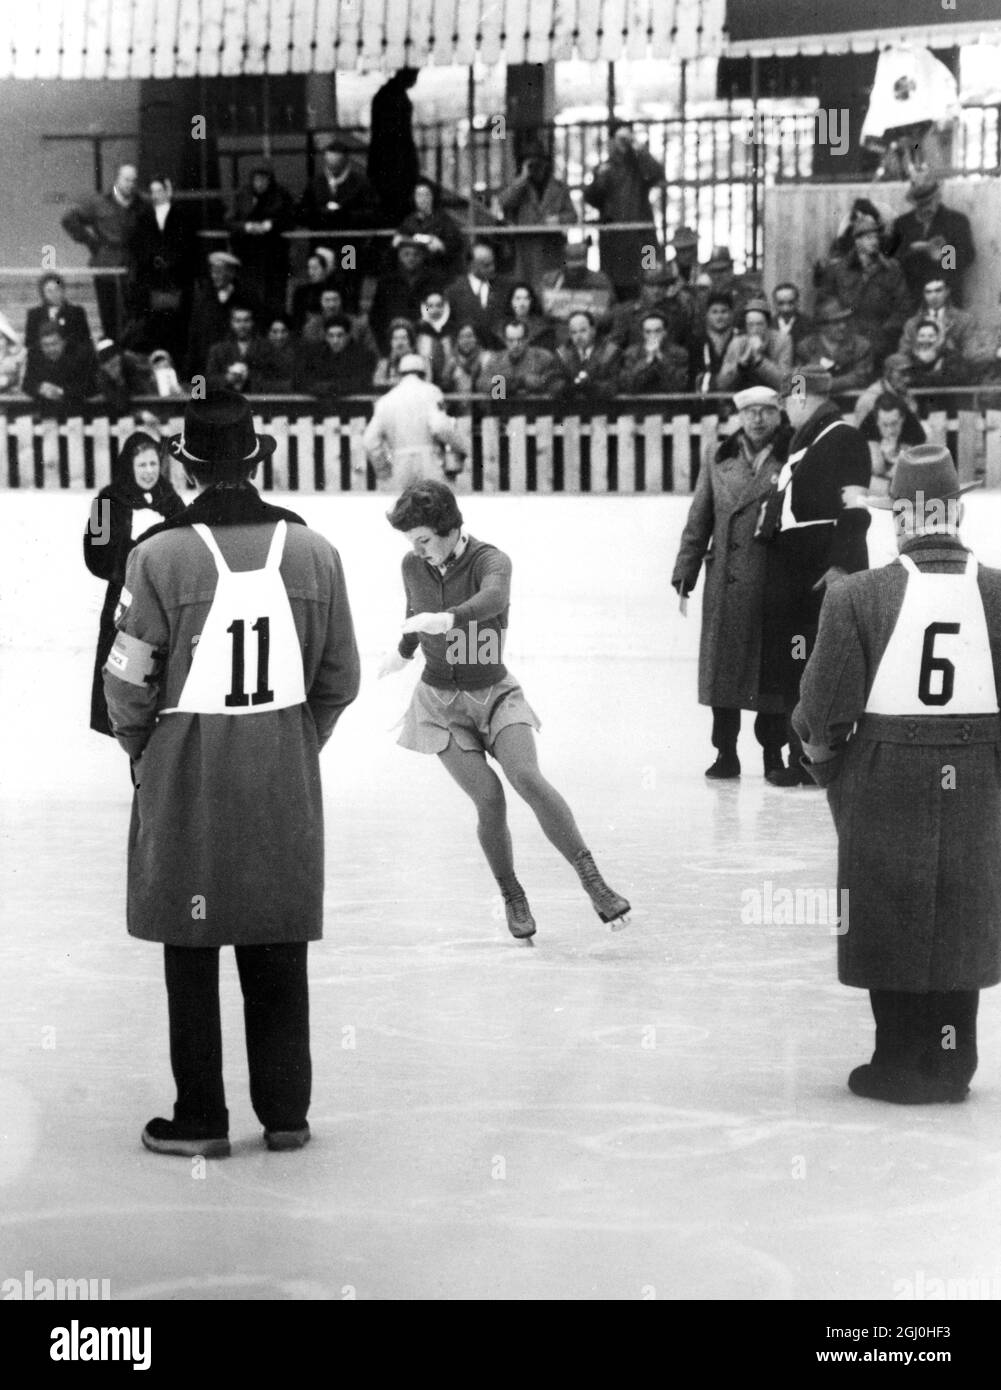 Olympische Winterspiele 1956 - Cortina d’Ampezzo, Italien Tenley Allight aus den Vereinigten Staaten wird bei den Olympischen Winterspielen in Cortina beim Eiskunstlauf der Frauen ihre Grundfiguren vervollständigen. Sie gewann die Goldmedaille der Frauen im Eiskunstlauf. - 2. Februar 1956 - ©TopFoto Stockfoto